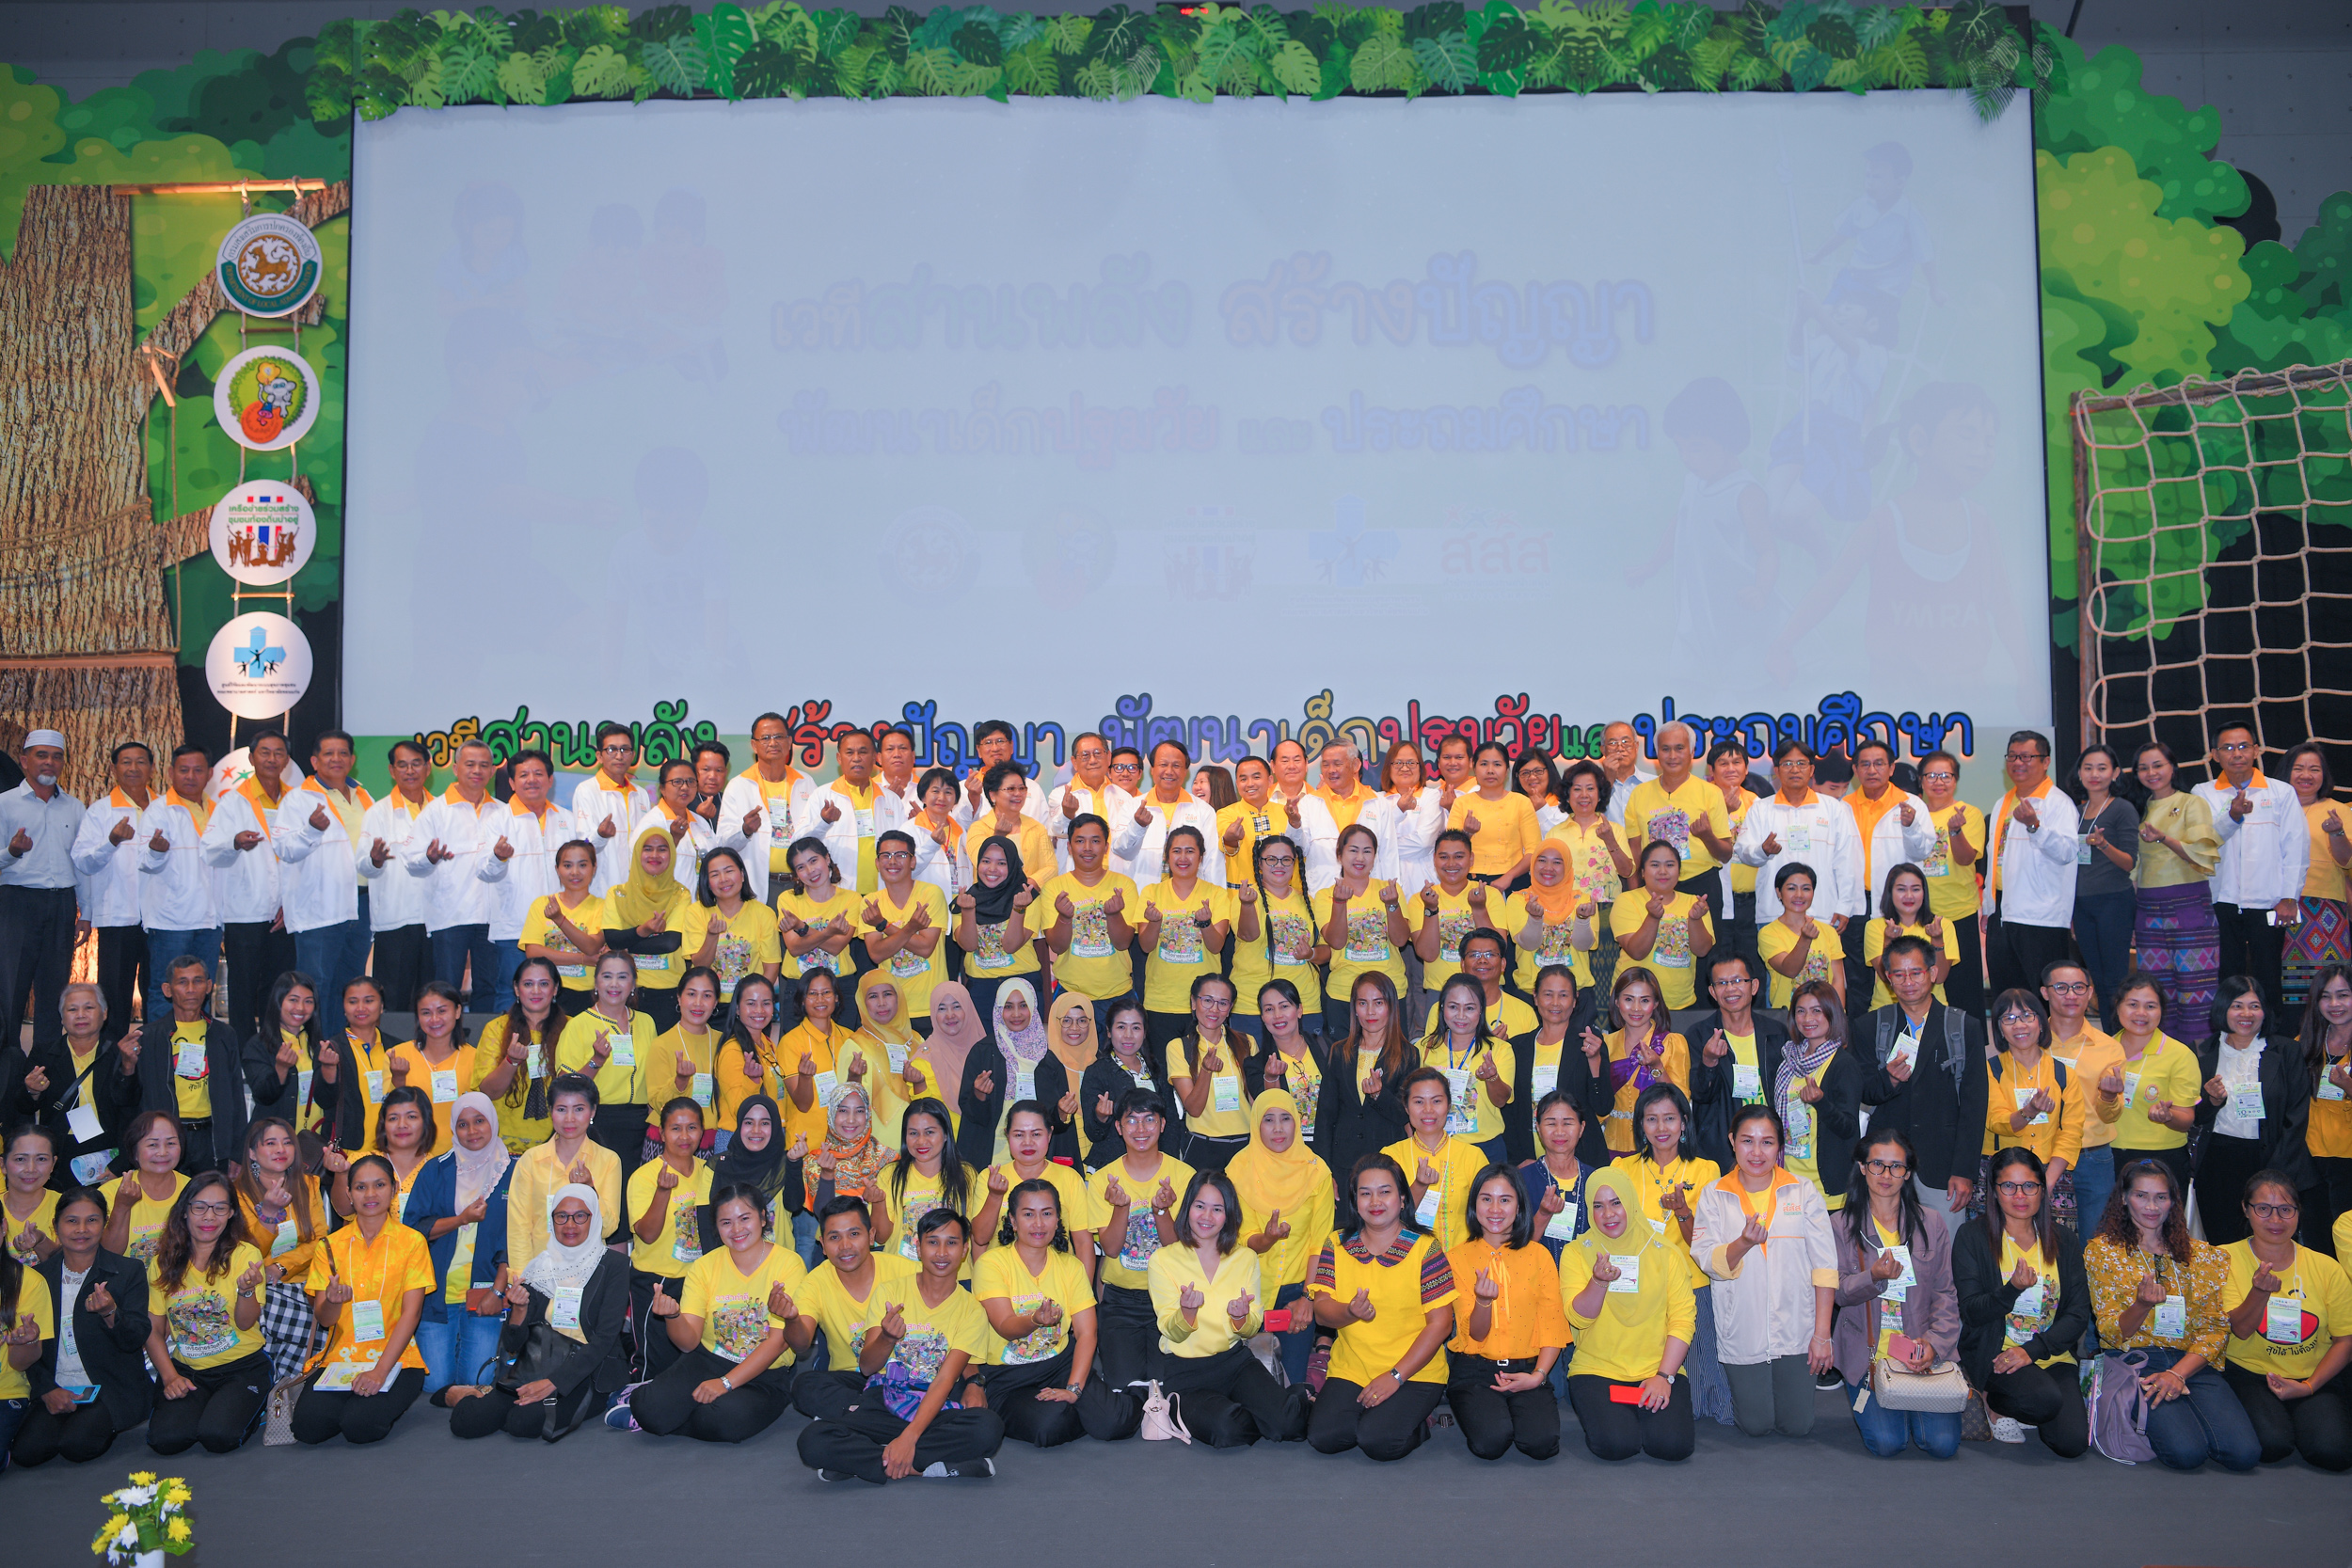 สสส.-เครือข่าย ประกาศเจตนารมณ์สร้างสุขภาวะเด็กไทย thaihealth